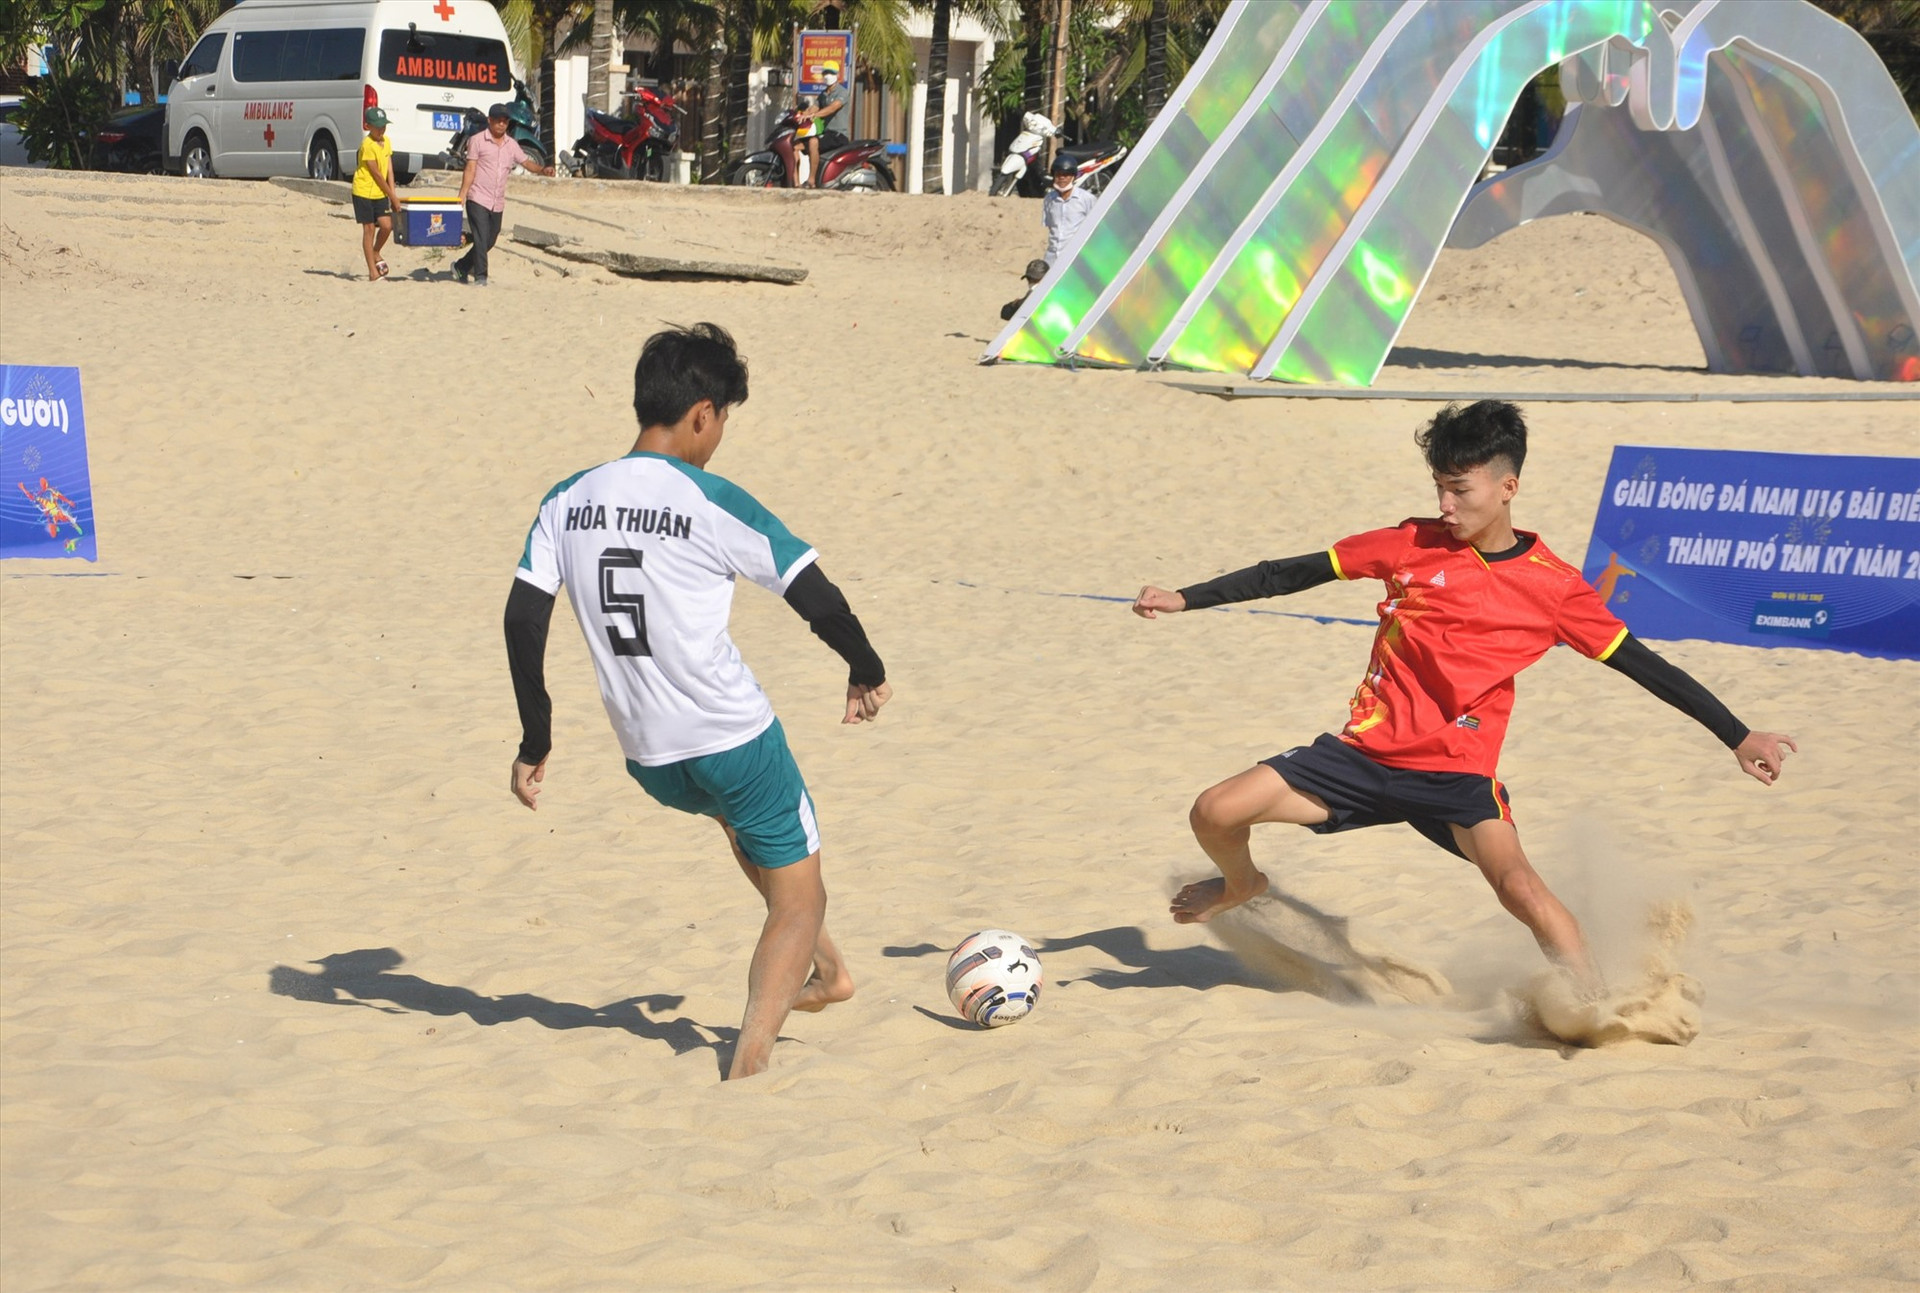 Trận khai màn đã kết thúc với chiến thắng 5-4 dành cho đội U16 Hòa Thuận (áo trắng) trước Tam Ngọc (áo cam). Ảnh: A.S